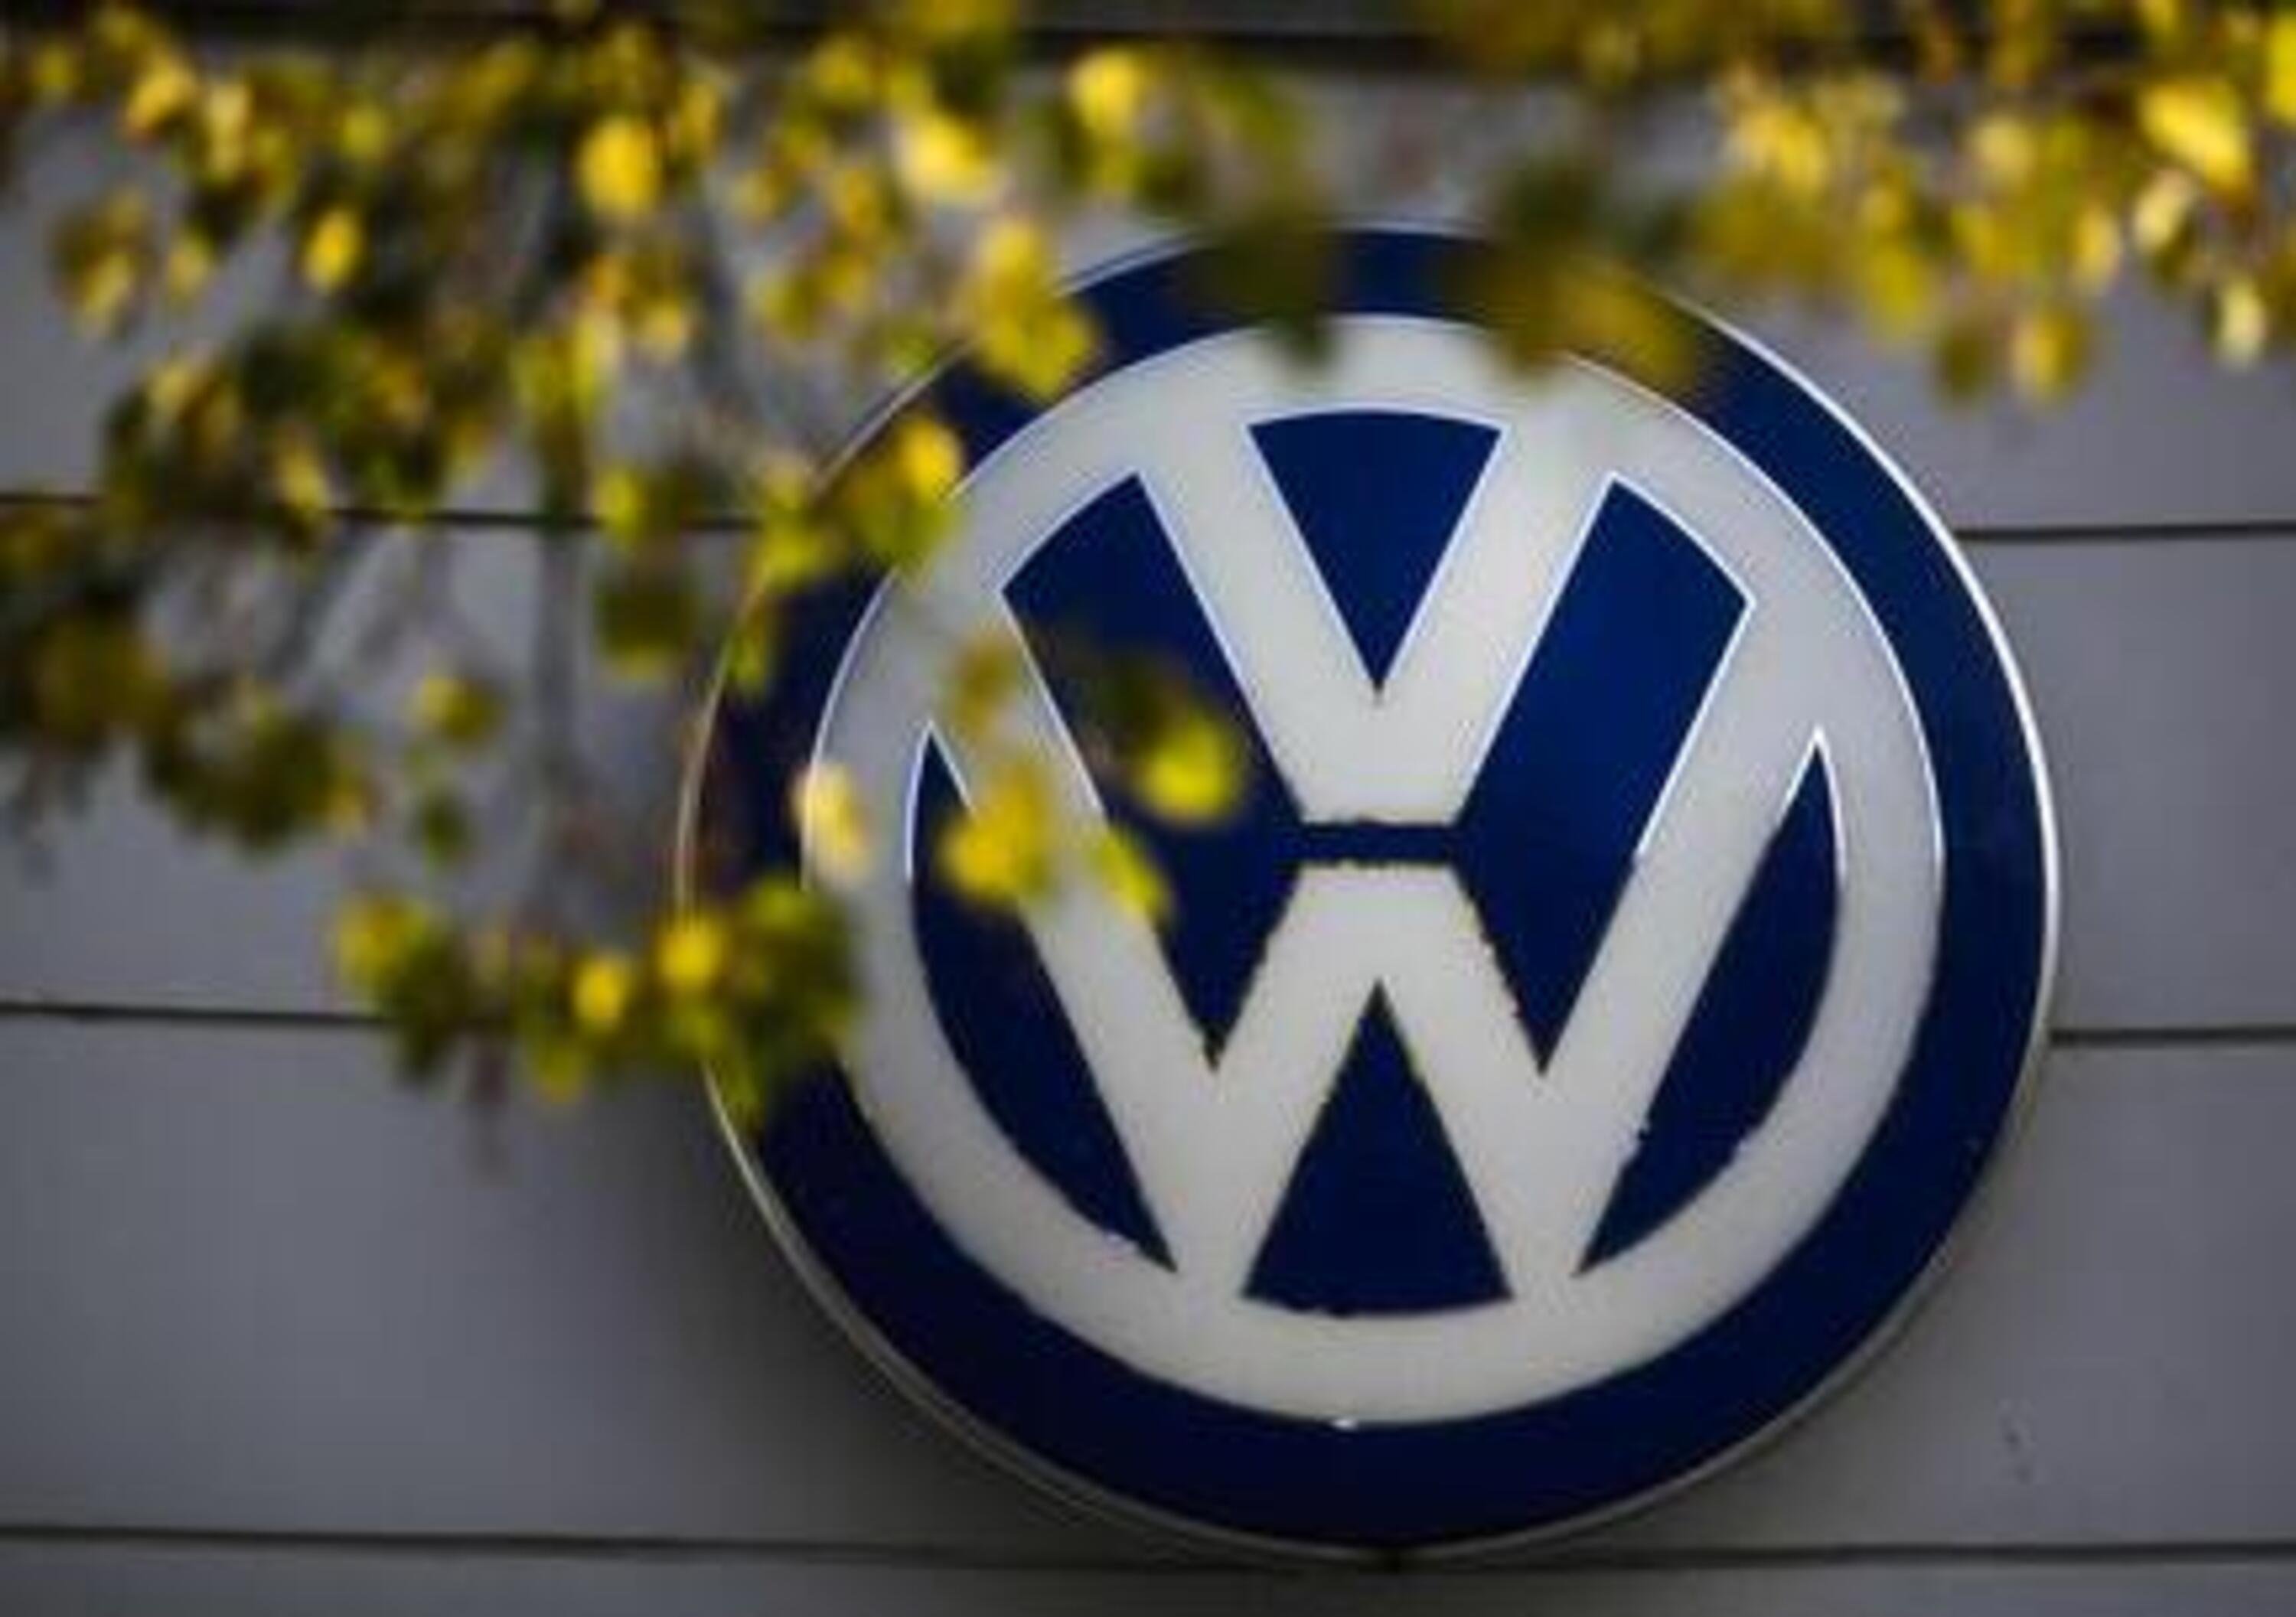 Gruppo Volkswagen: joint venture in Algeria per produzione auto dal 2017